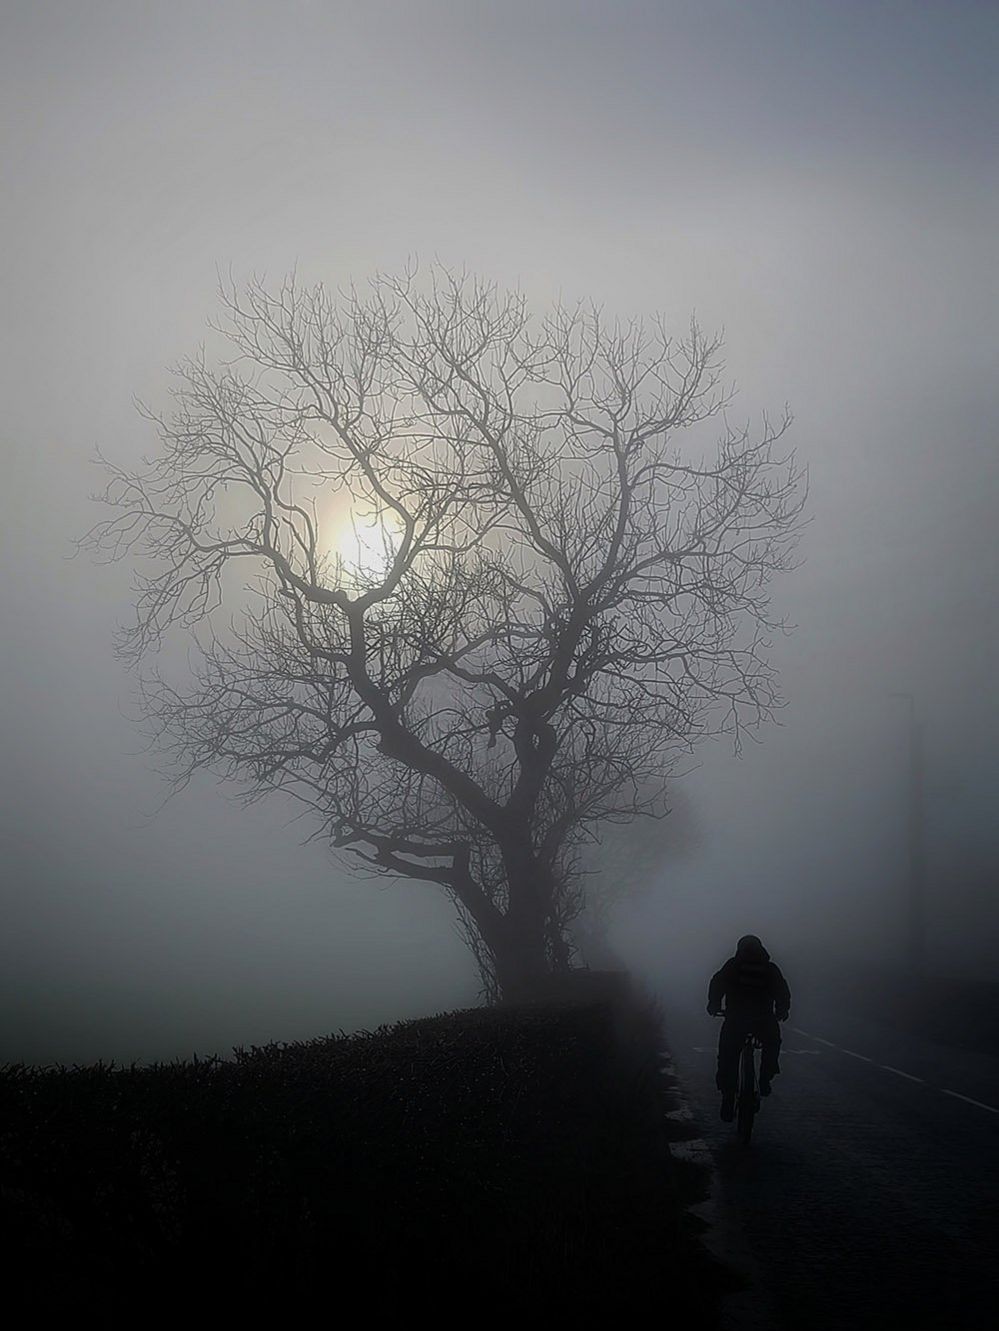 A cyclist on a foggy road in Billinge, Merseyside